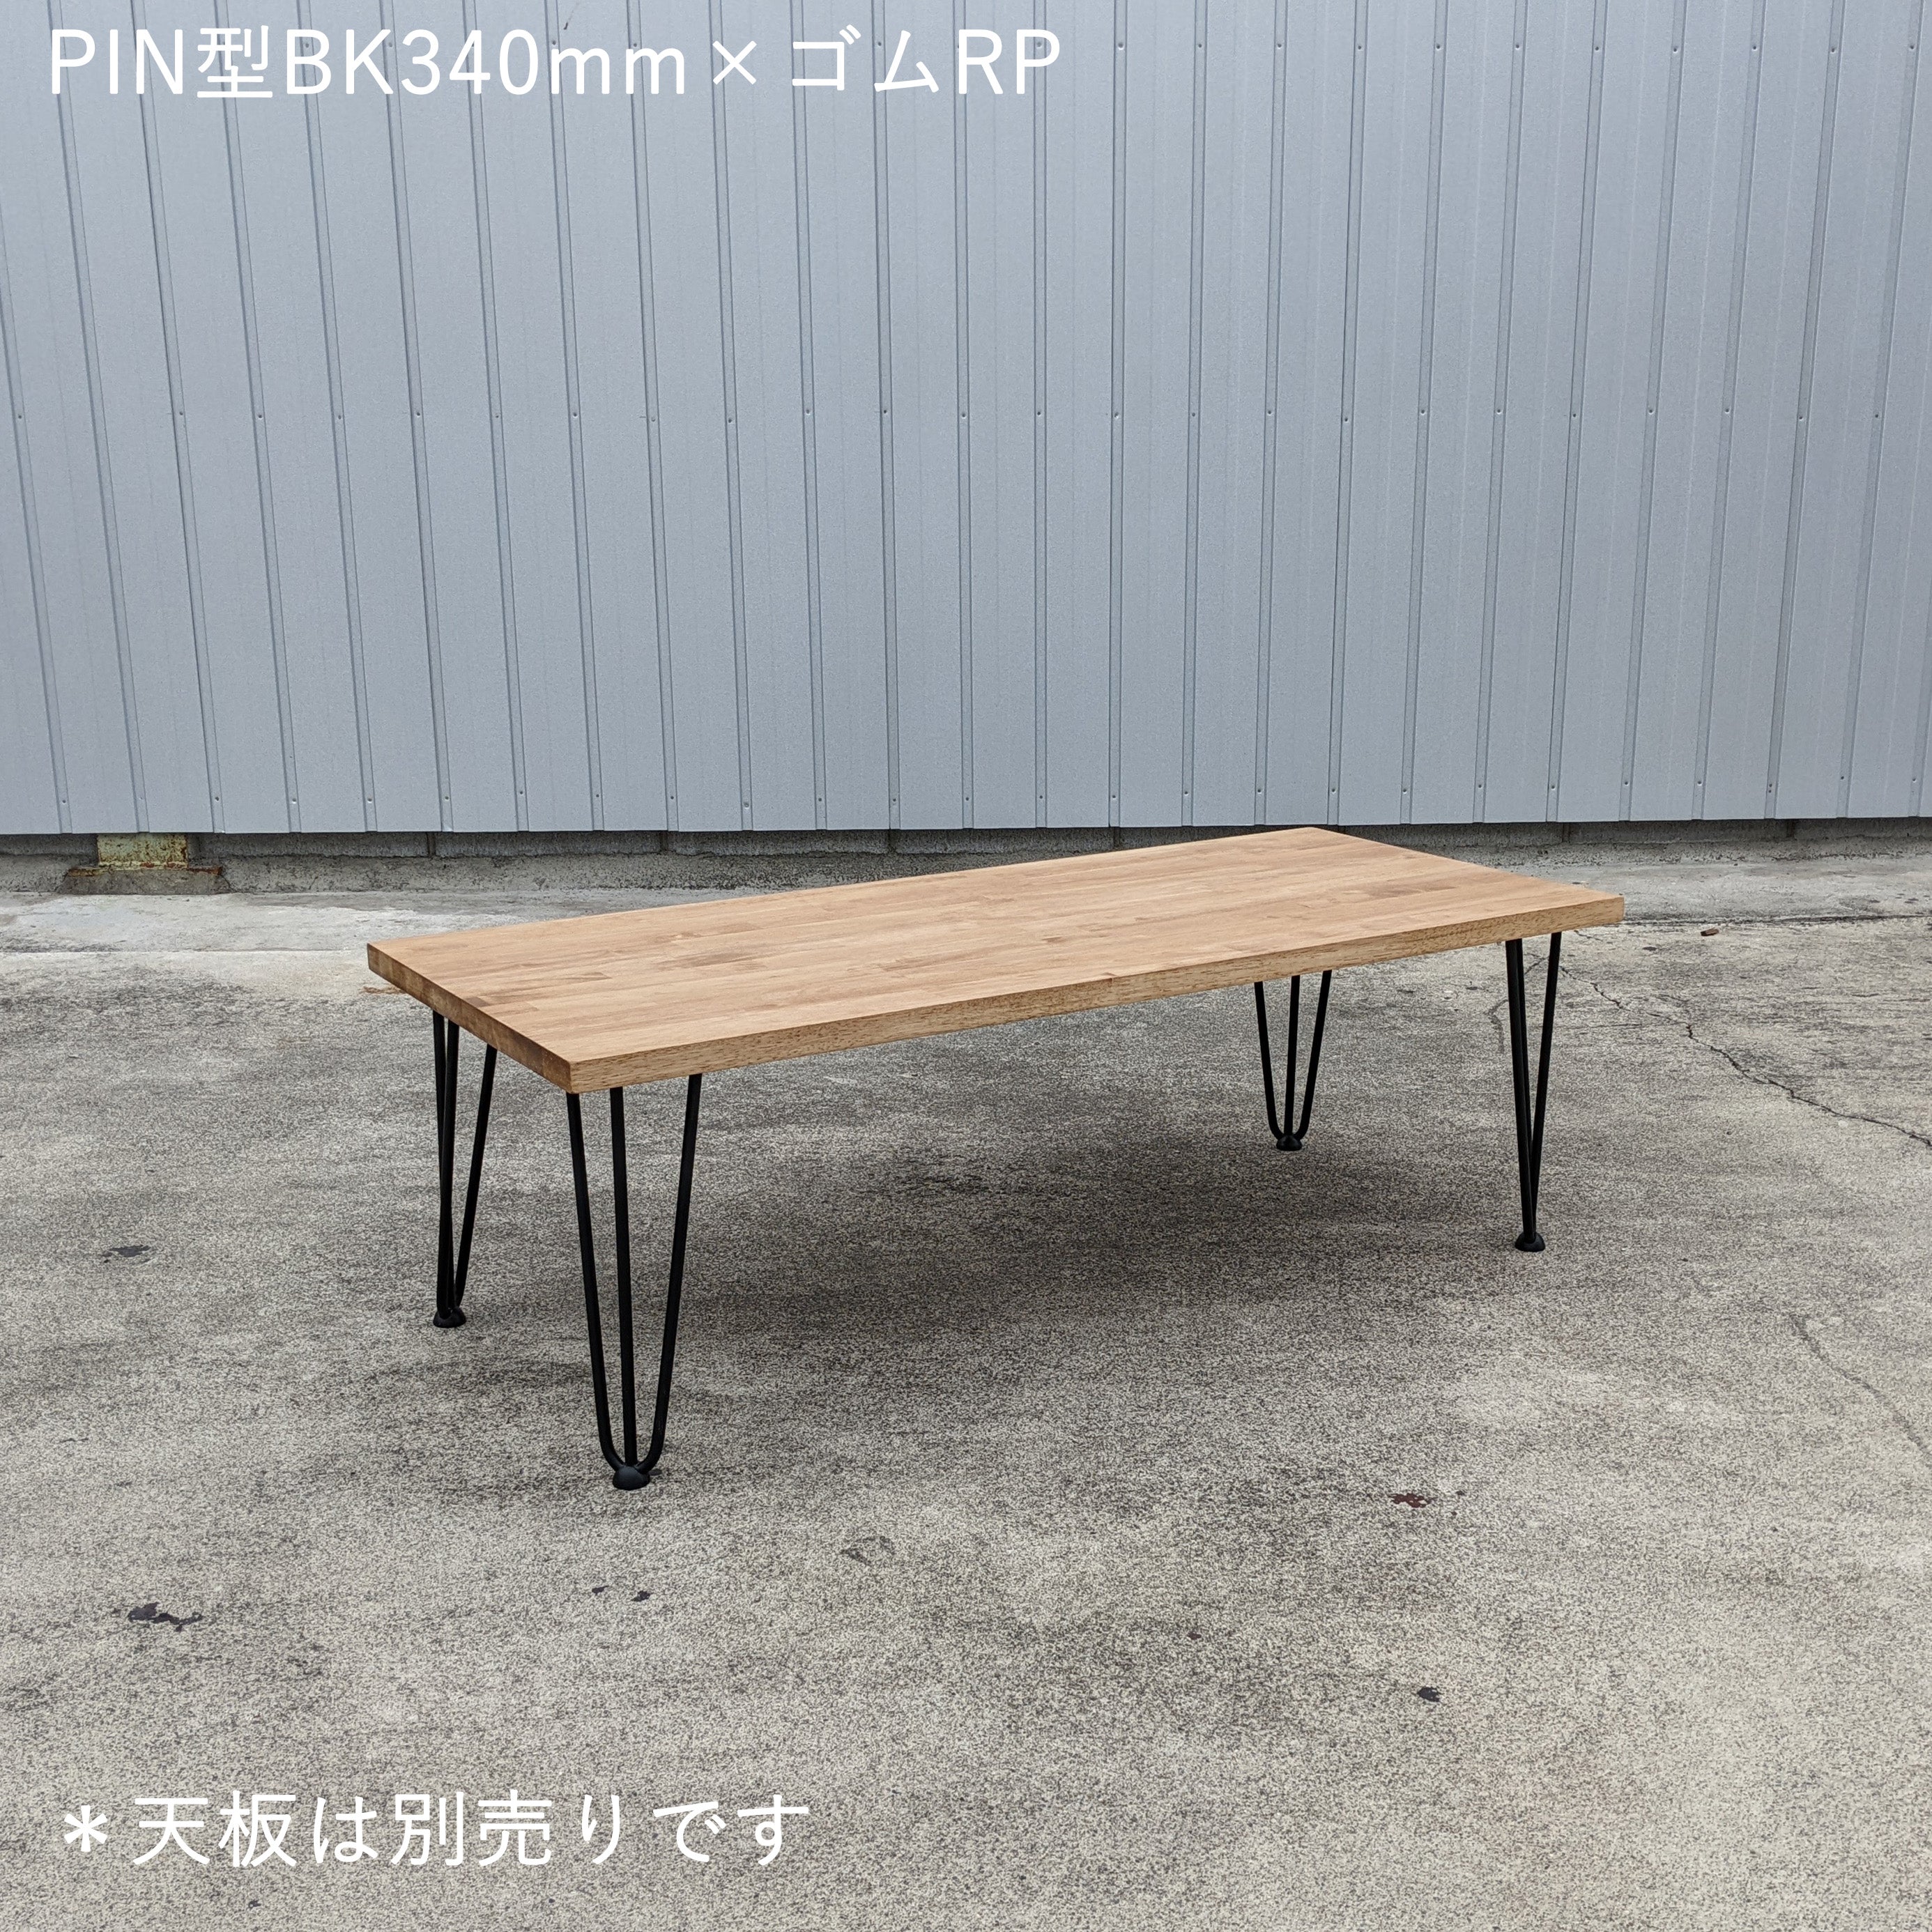 テーブル脚 PIN型 高さ340㎜ - 清水材木店